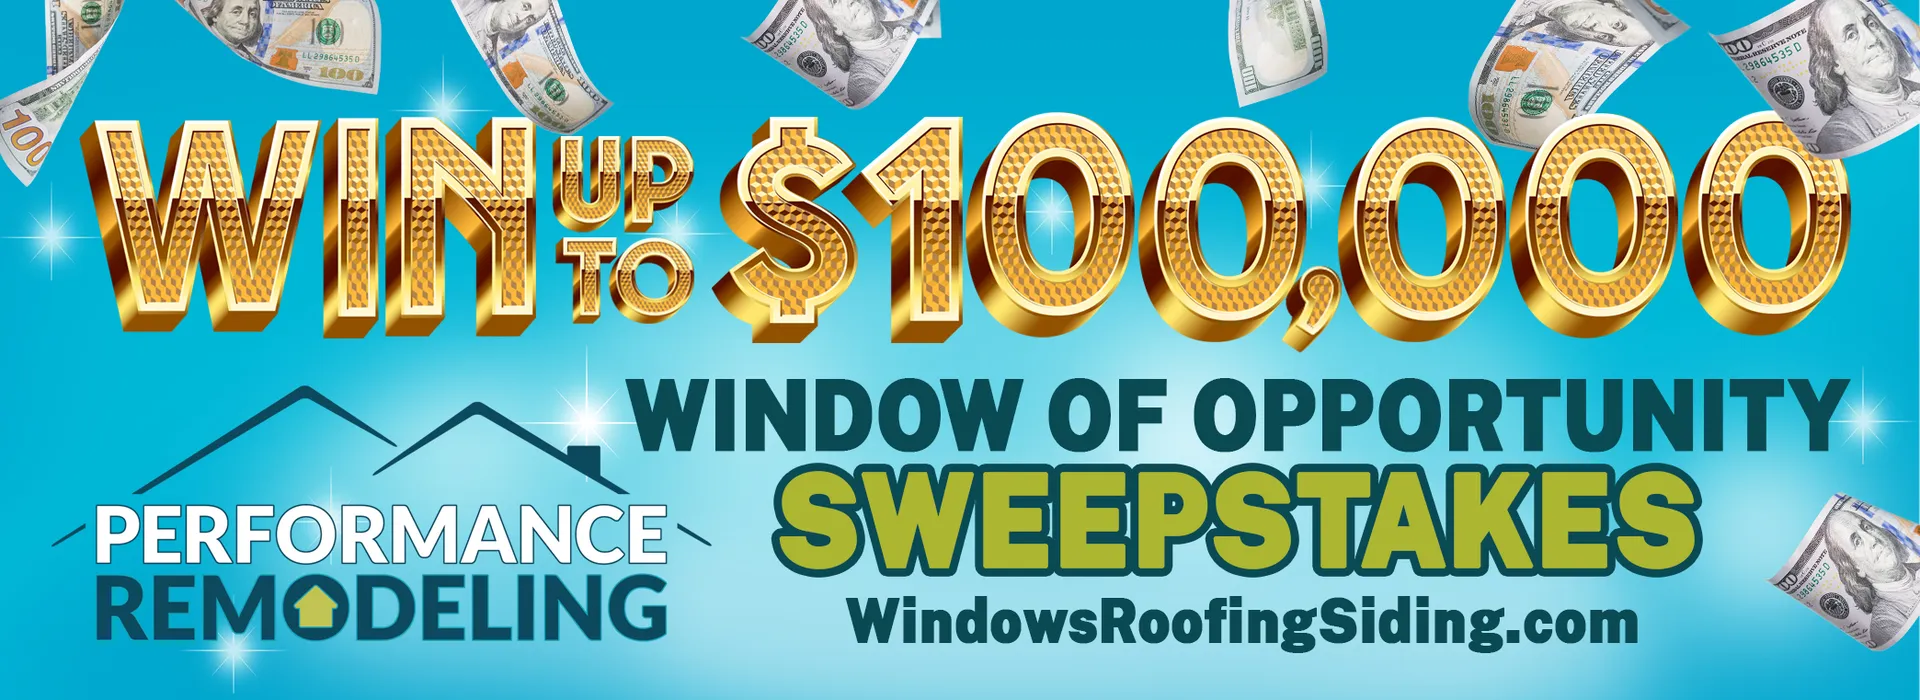 $100,000 window of opportunity sweepstakes badge